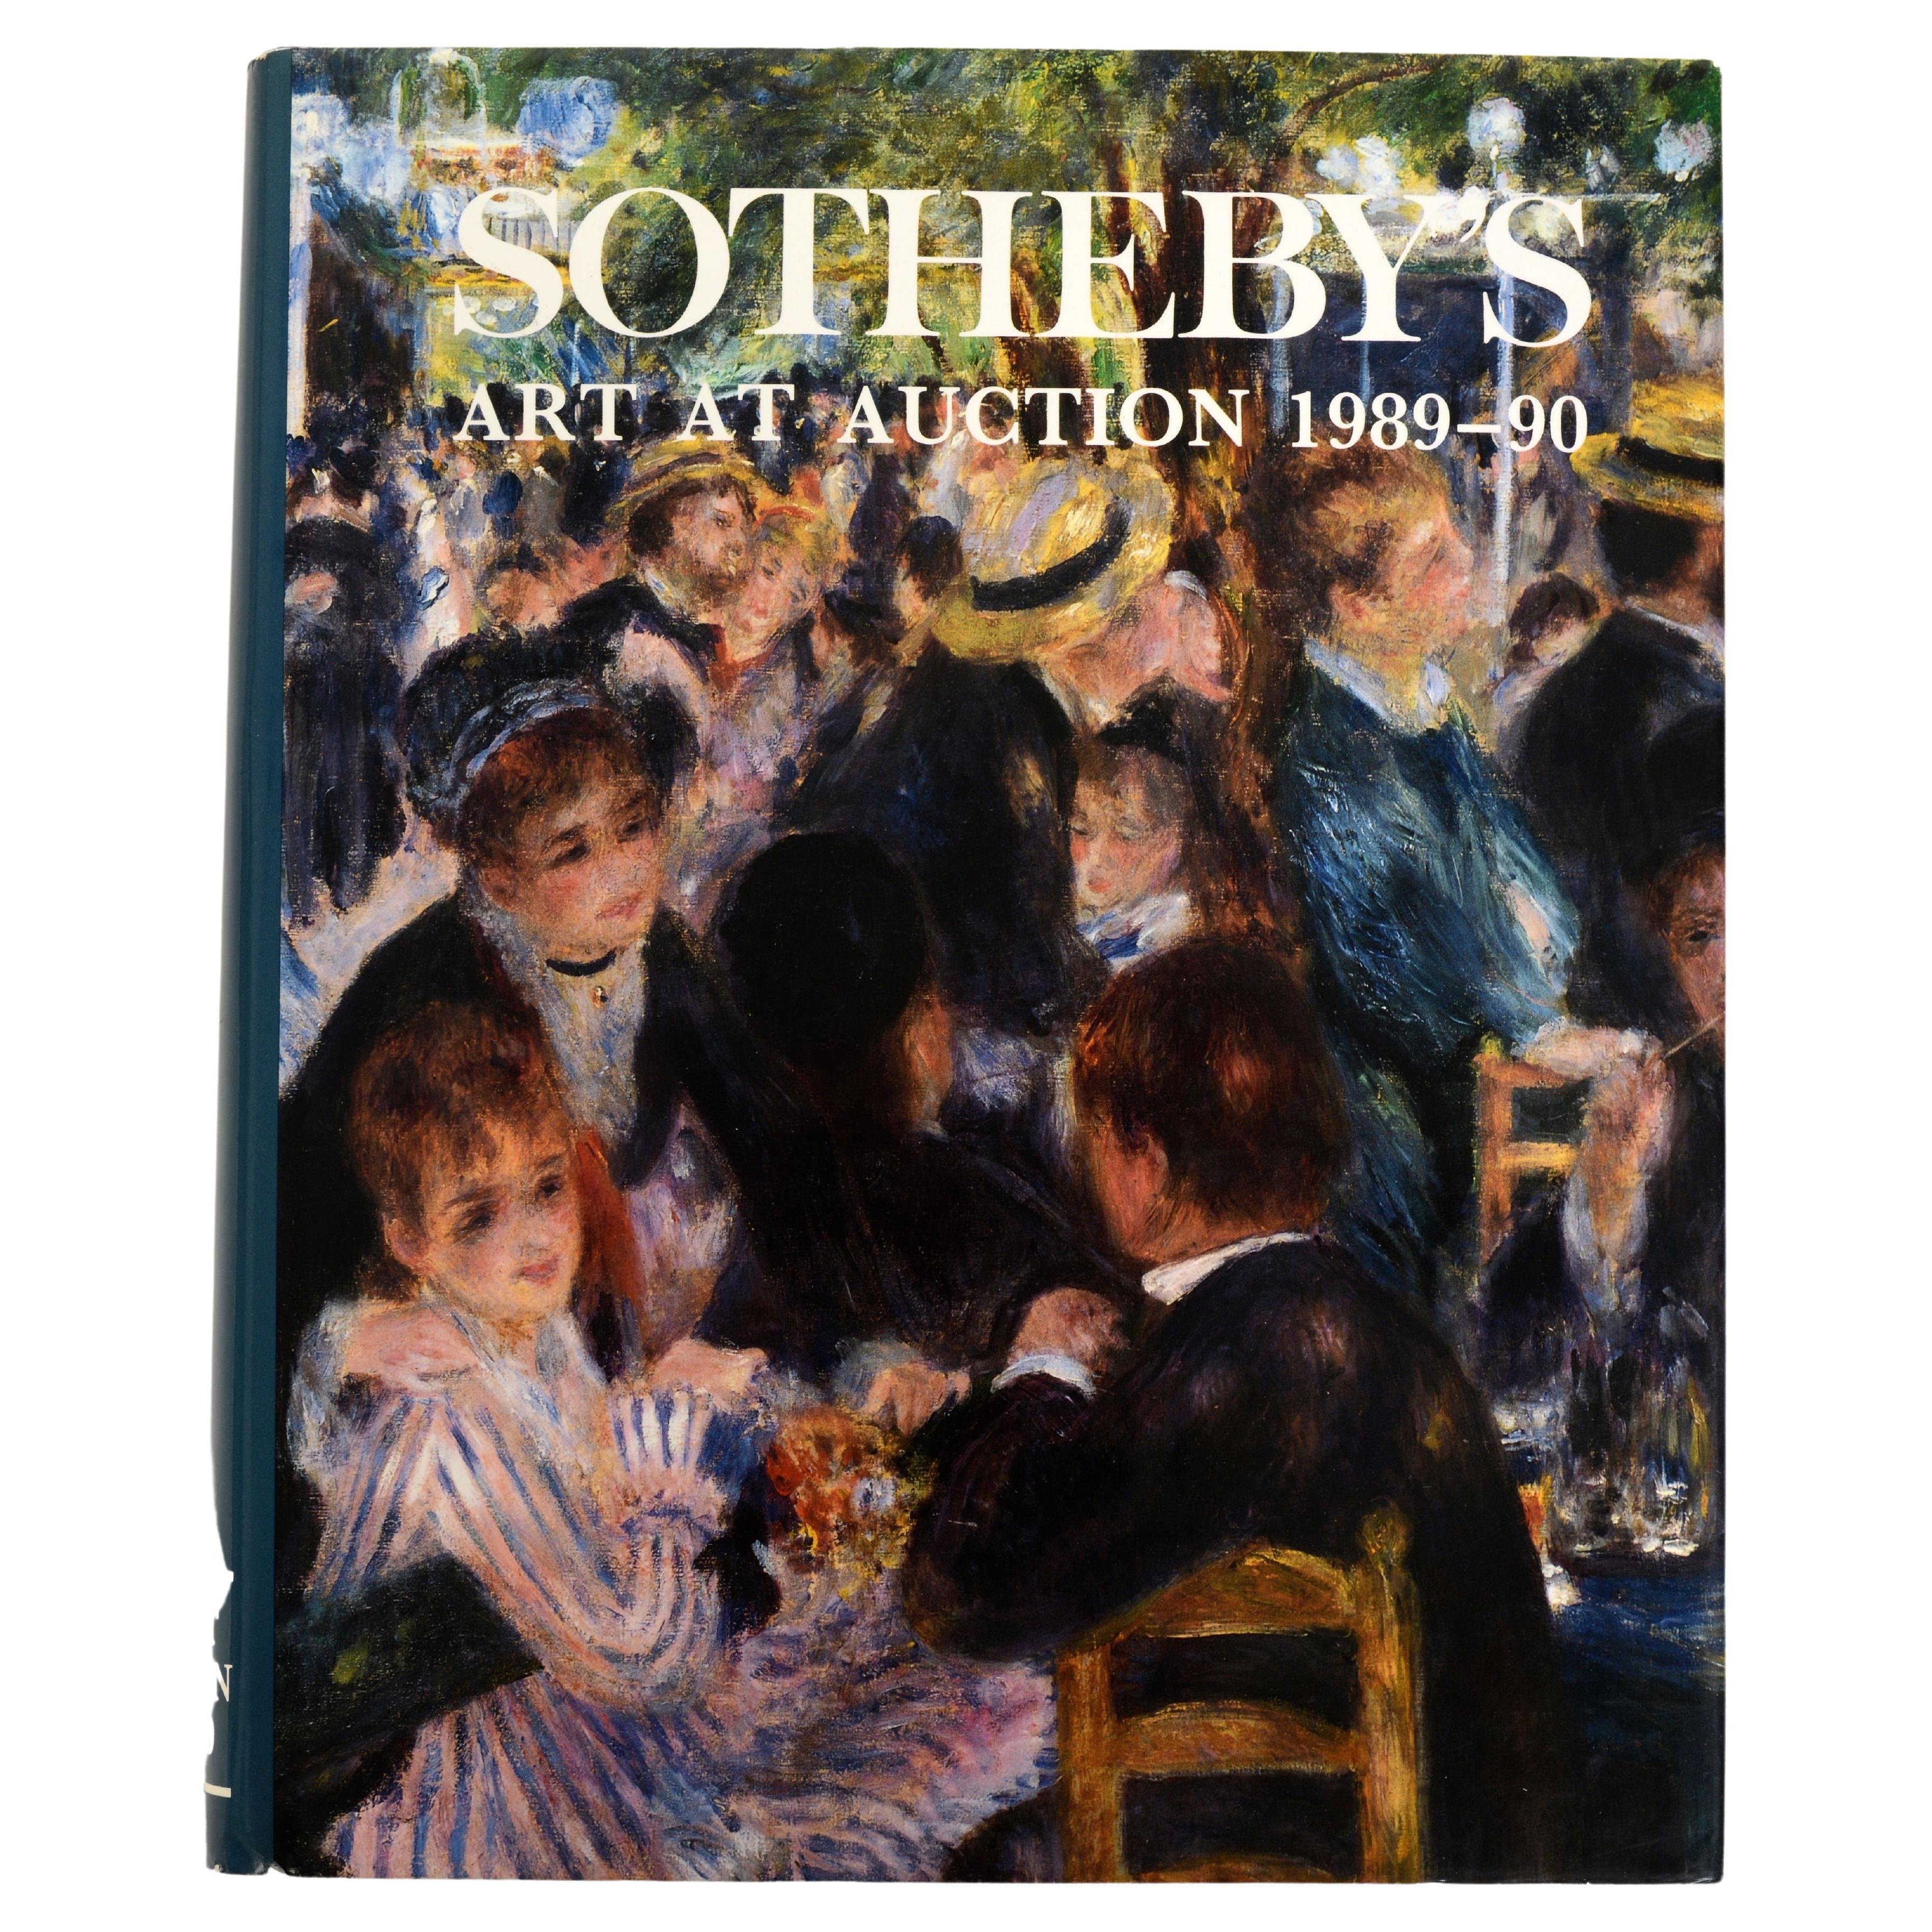 Sotheby's Art at Auction - 1989-90 von Sally Prideaux (Herausgeberin), 1st Ed